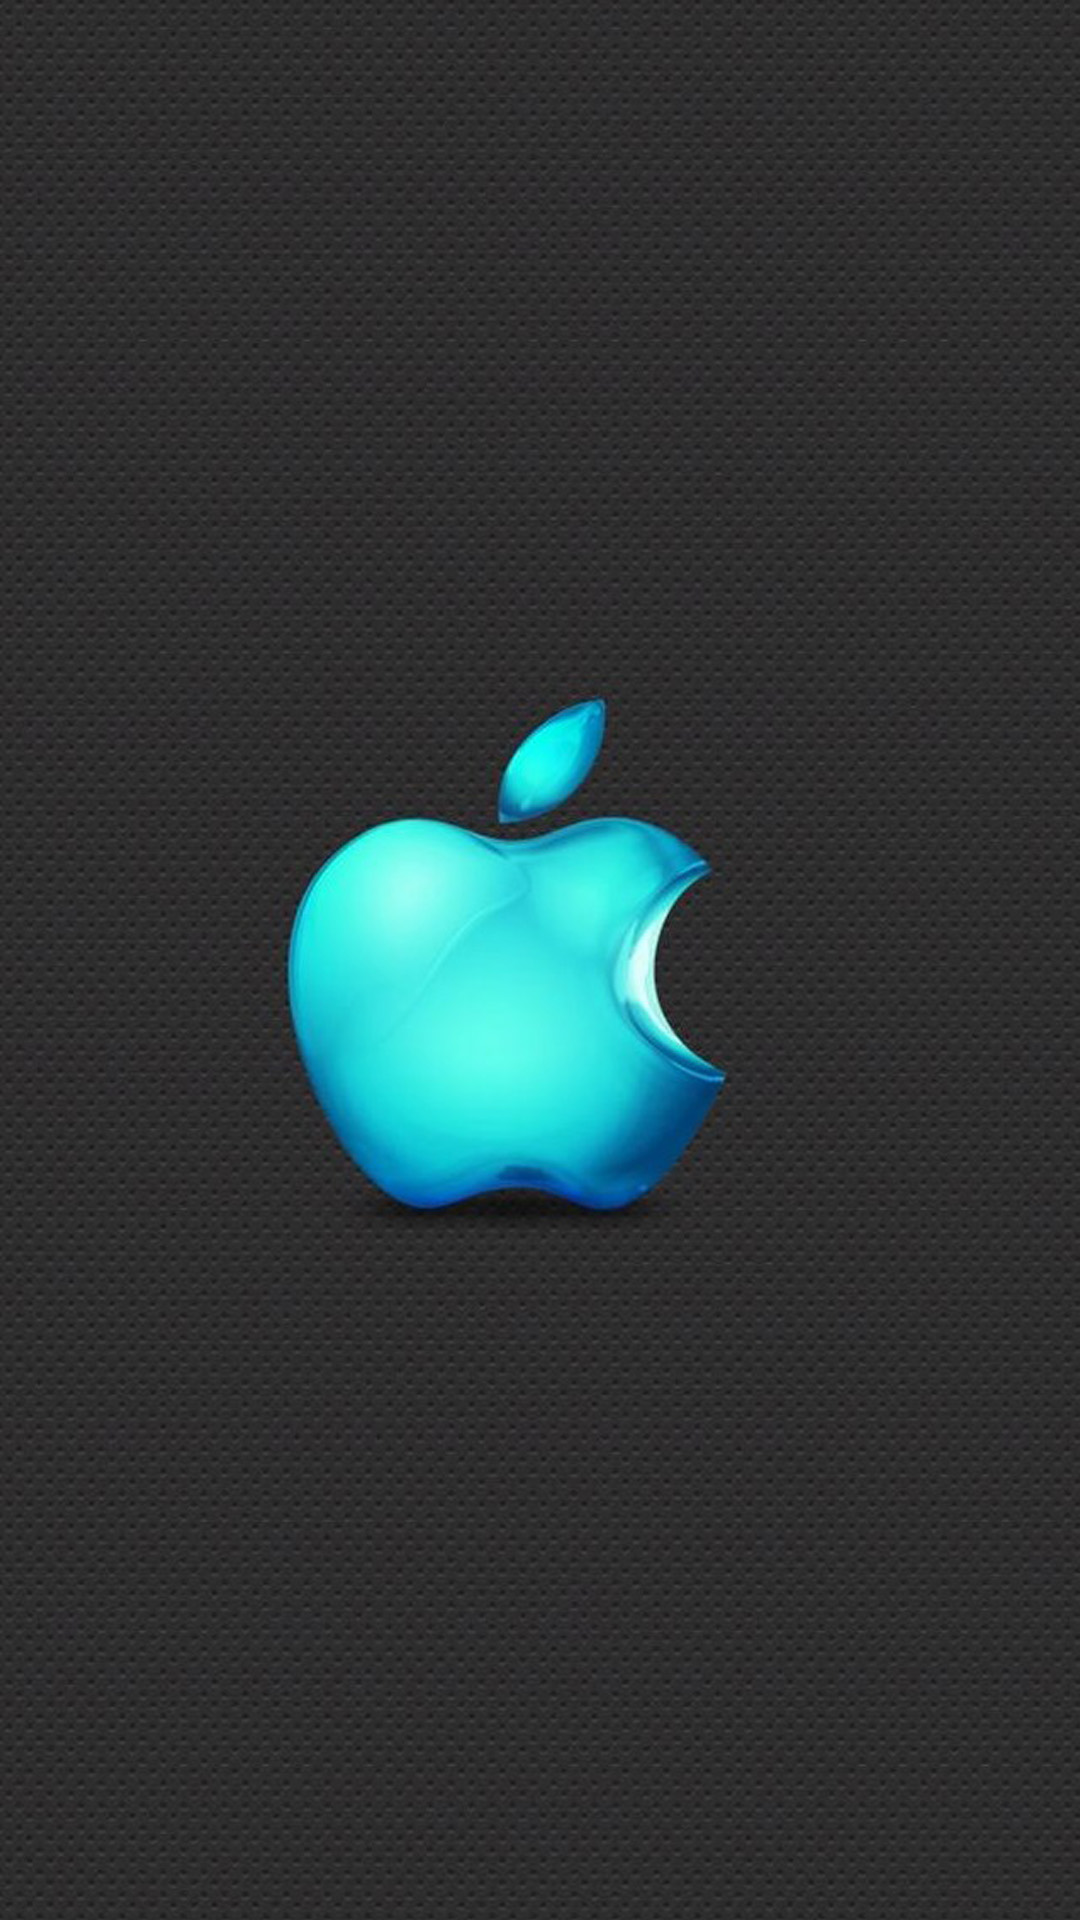 [46+] Apple 6 Plus Wallpapers - WallpaperSafari